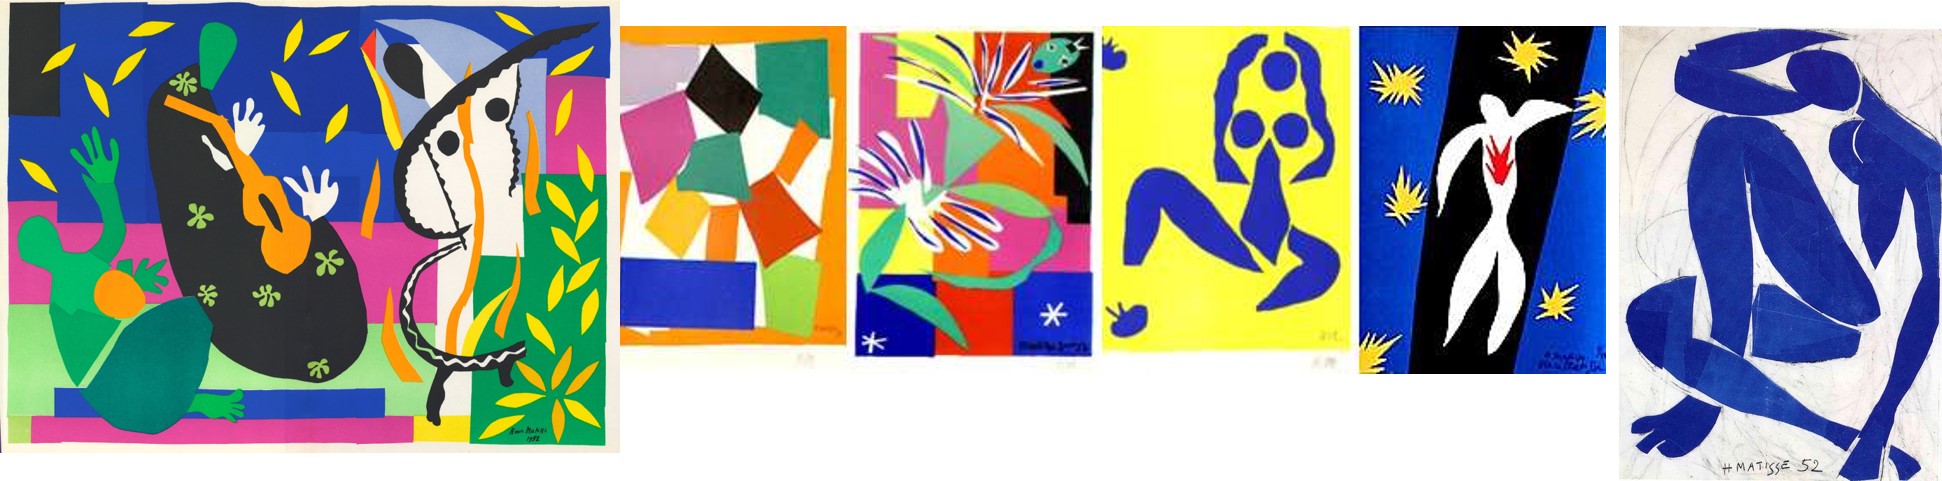 Matisse Collage 